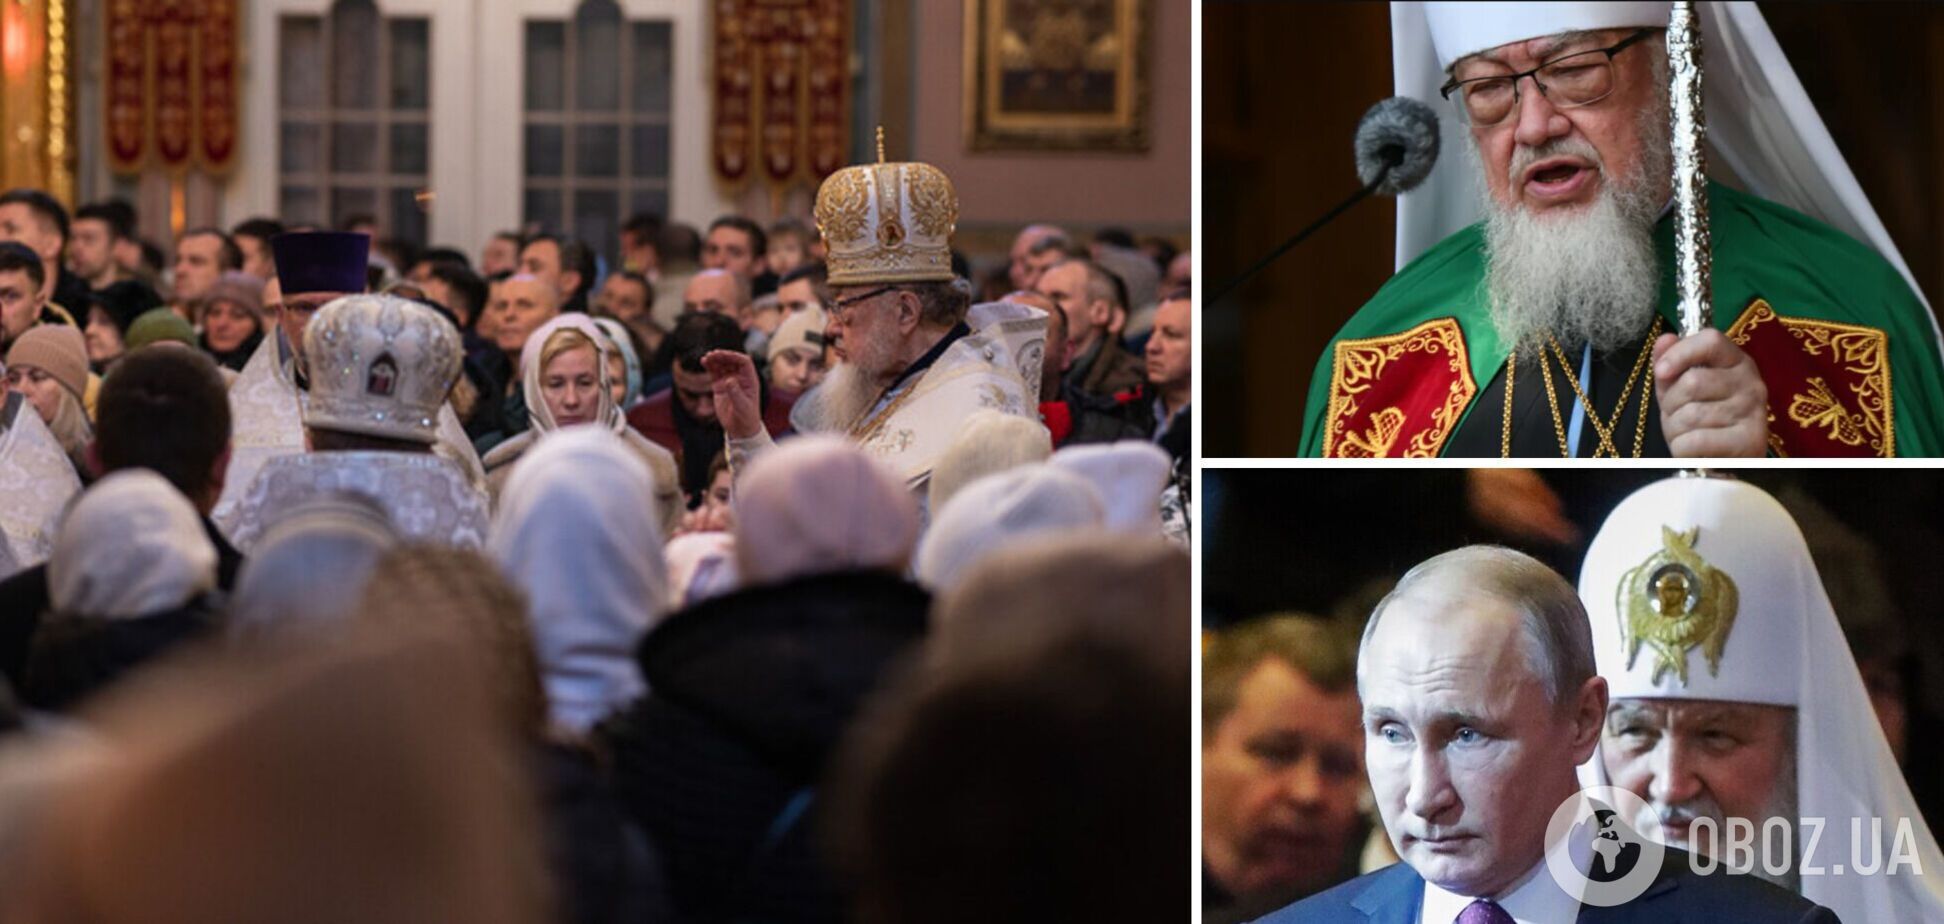 'Приведет к распаду страны: польский митрополит сделал скандальное заявление о новой дате празднования Рождества в Украине